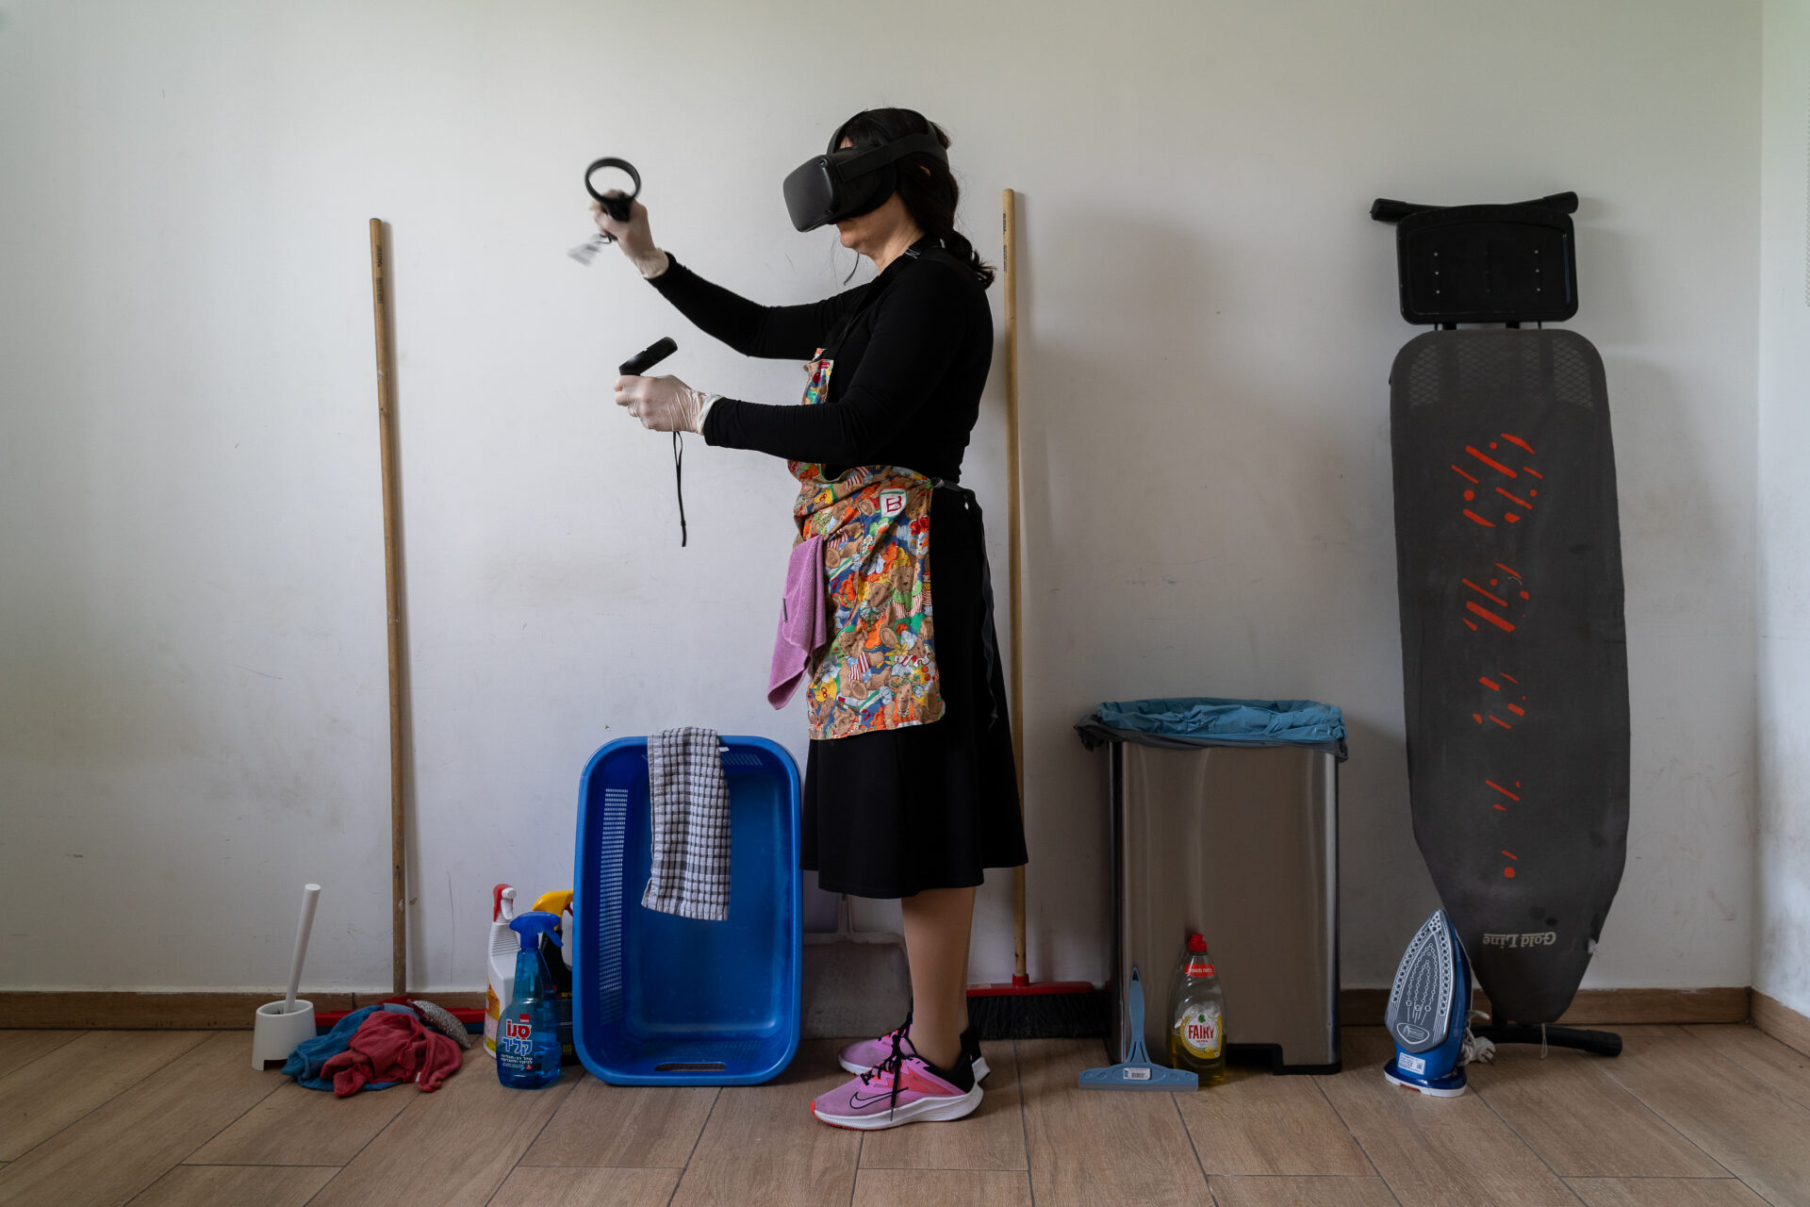 אילנה הופמן, מציאות מדומה בית נקי, וידאו, 305 דק, 2023